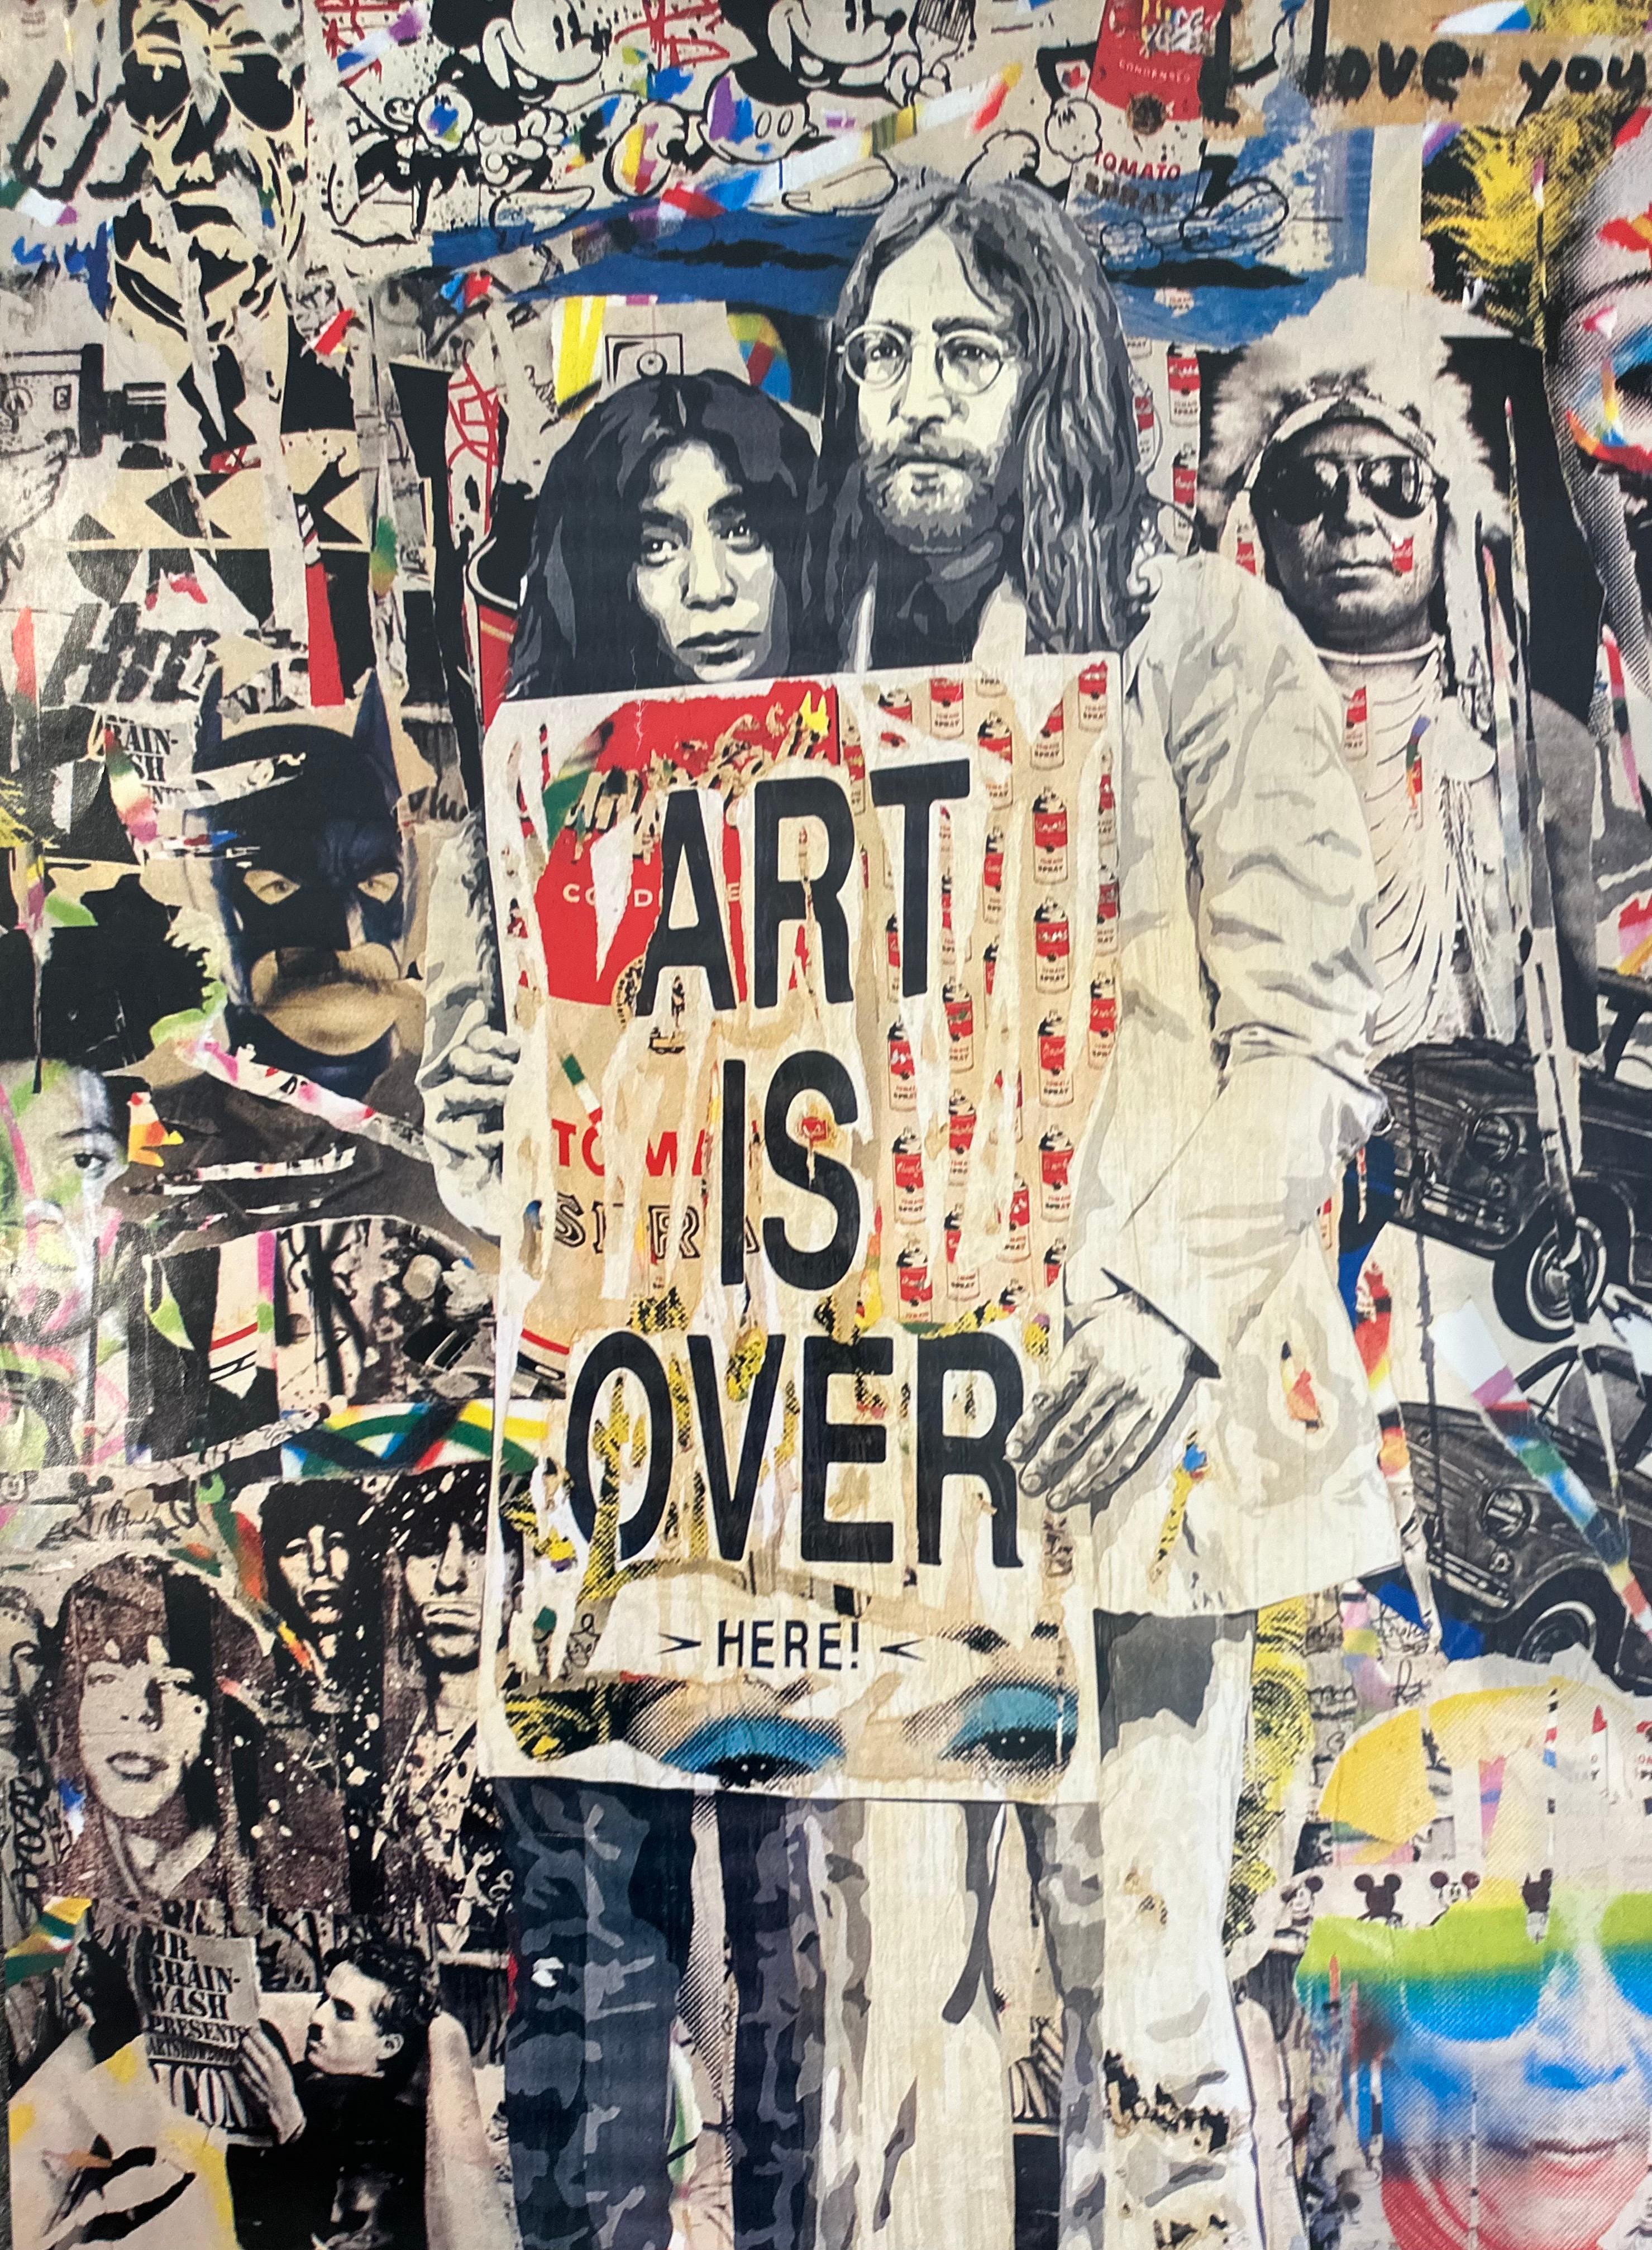 Hochwertiges Lithografie-Poster von John Lennon & Yoko Ono aus der legendären ICONS-Ausstellung von Mr. Brainwash, ca. 2010. Das ungerahmte Werk misst 23